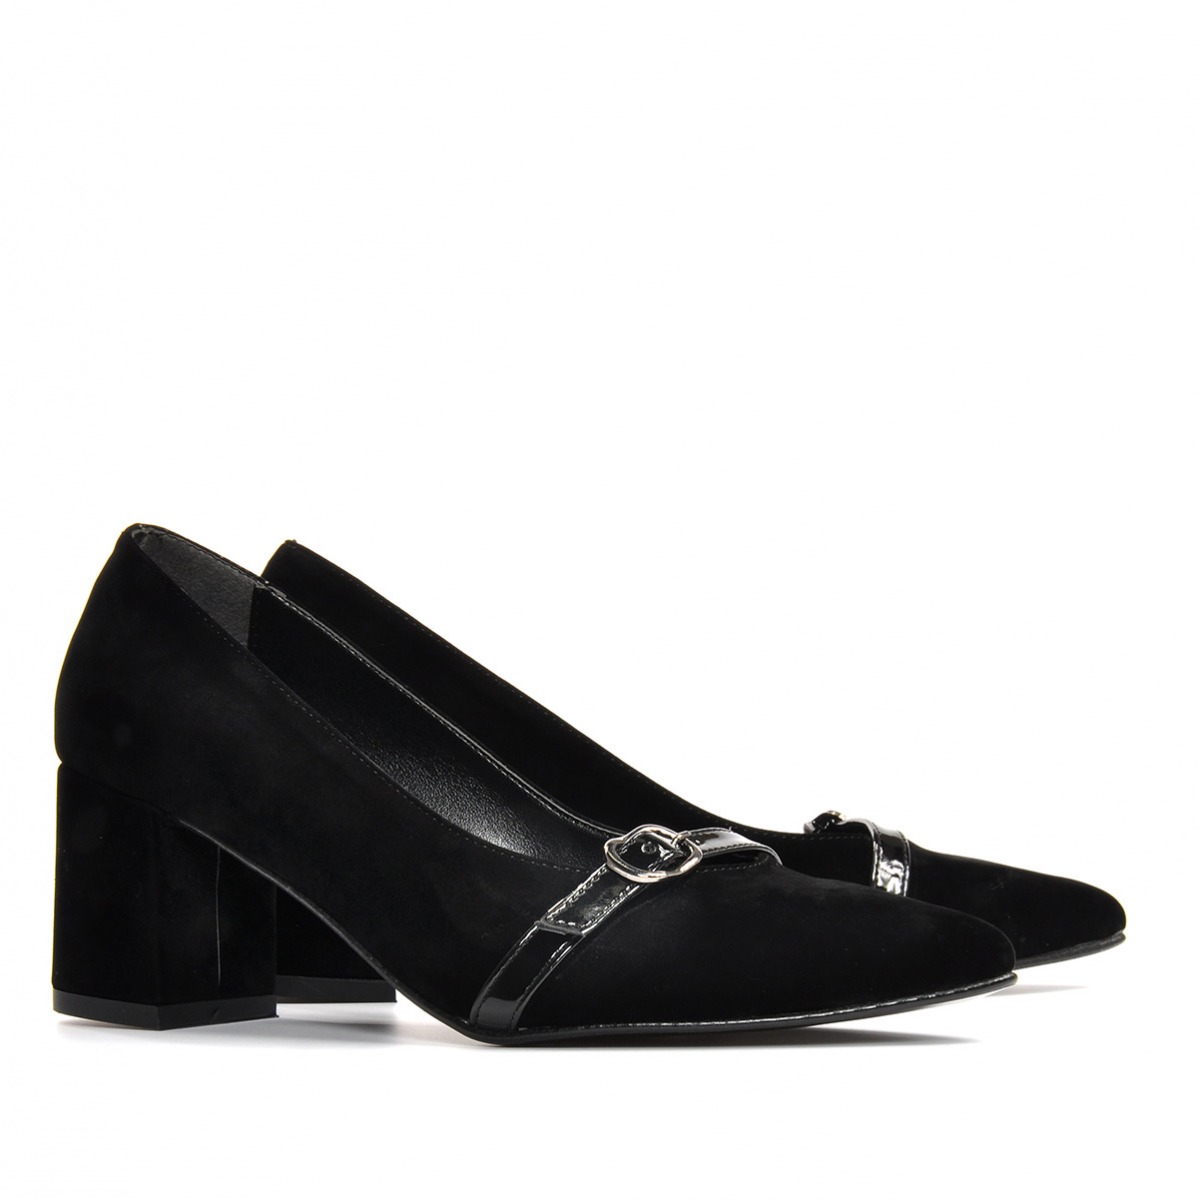 Flo Kadın  Siyah-Süet Klasik Topuklu Ayakkabı VZN19-110K. 6